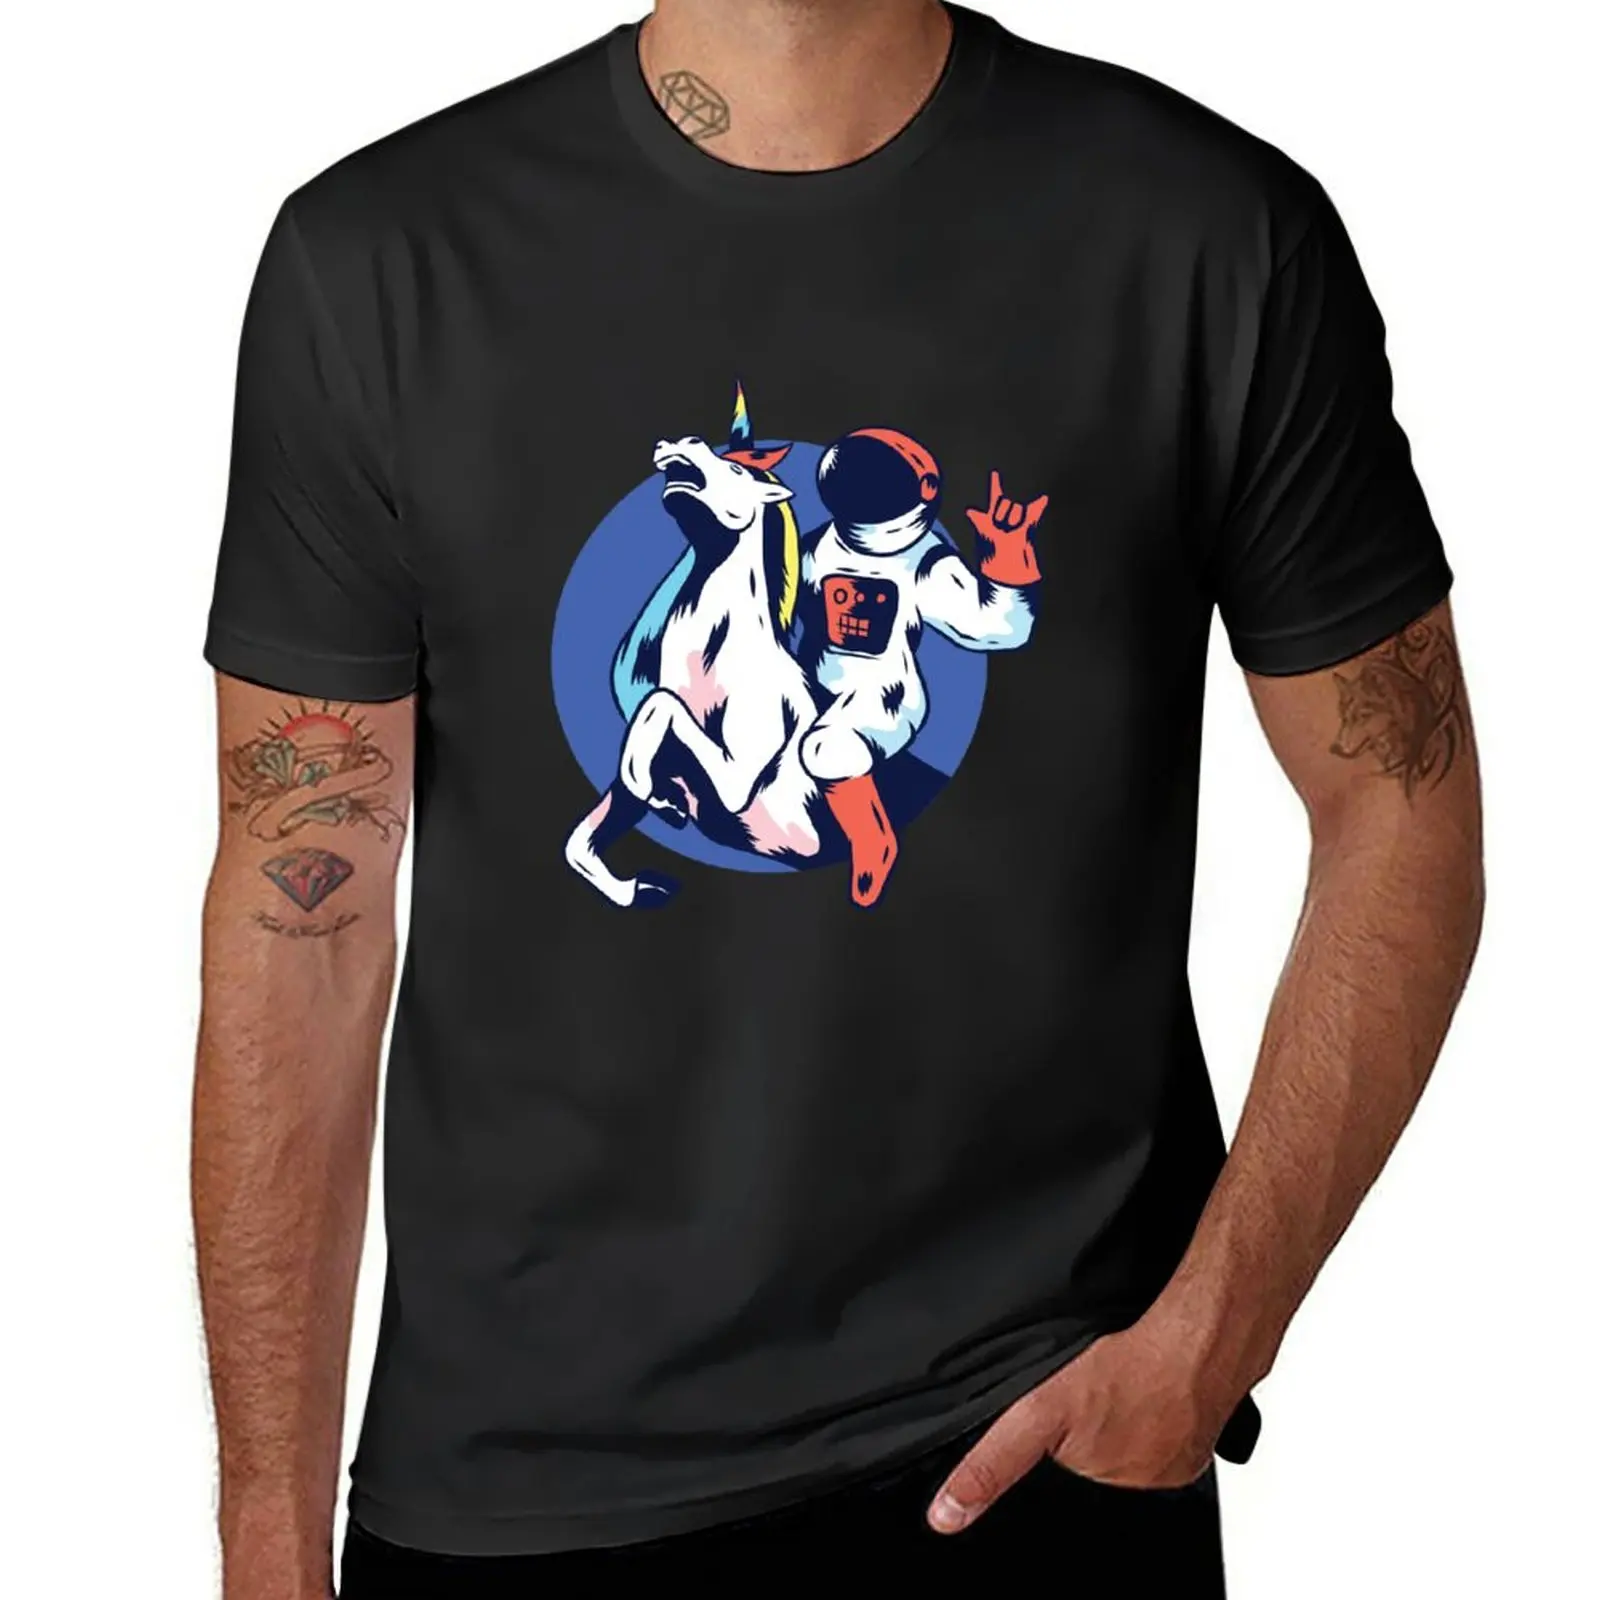 

Футболка с изображением астронавта, единорога, новая коллекция, милые топы, облегающие футболки для мужчин